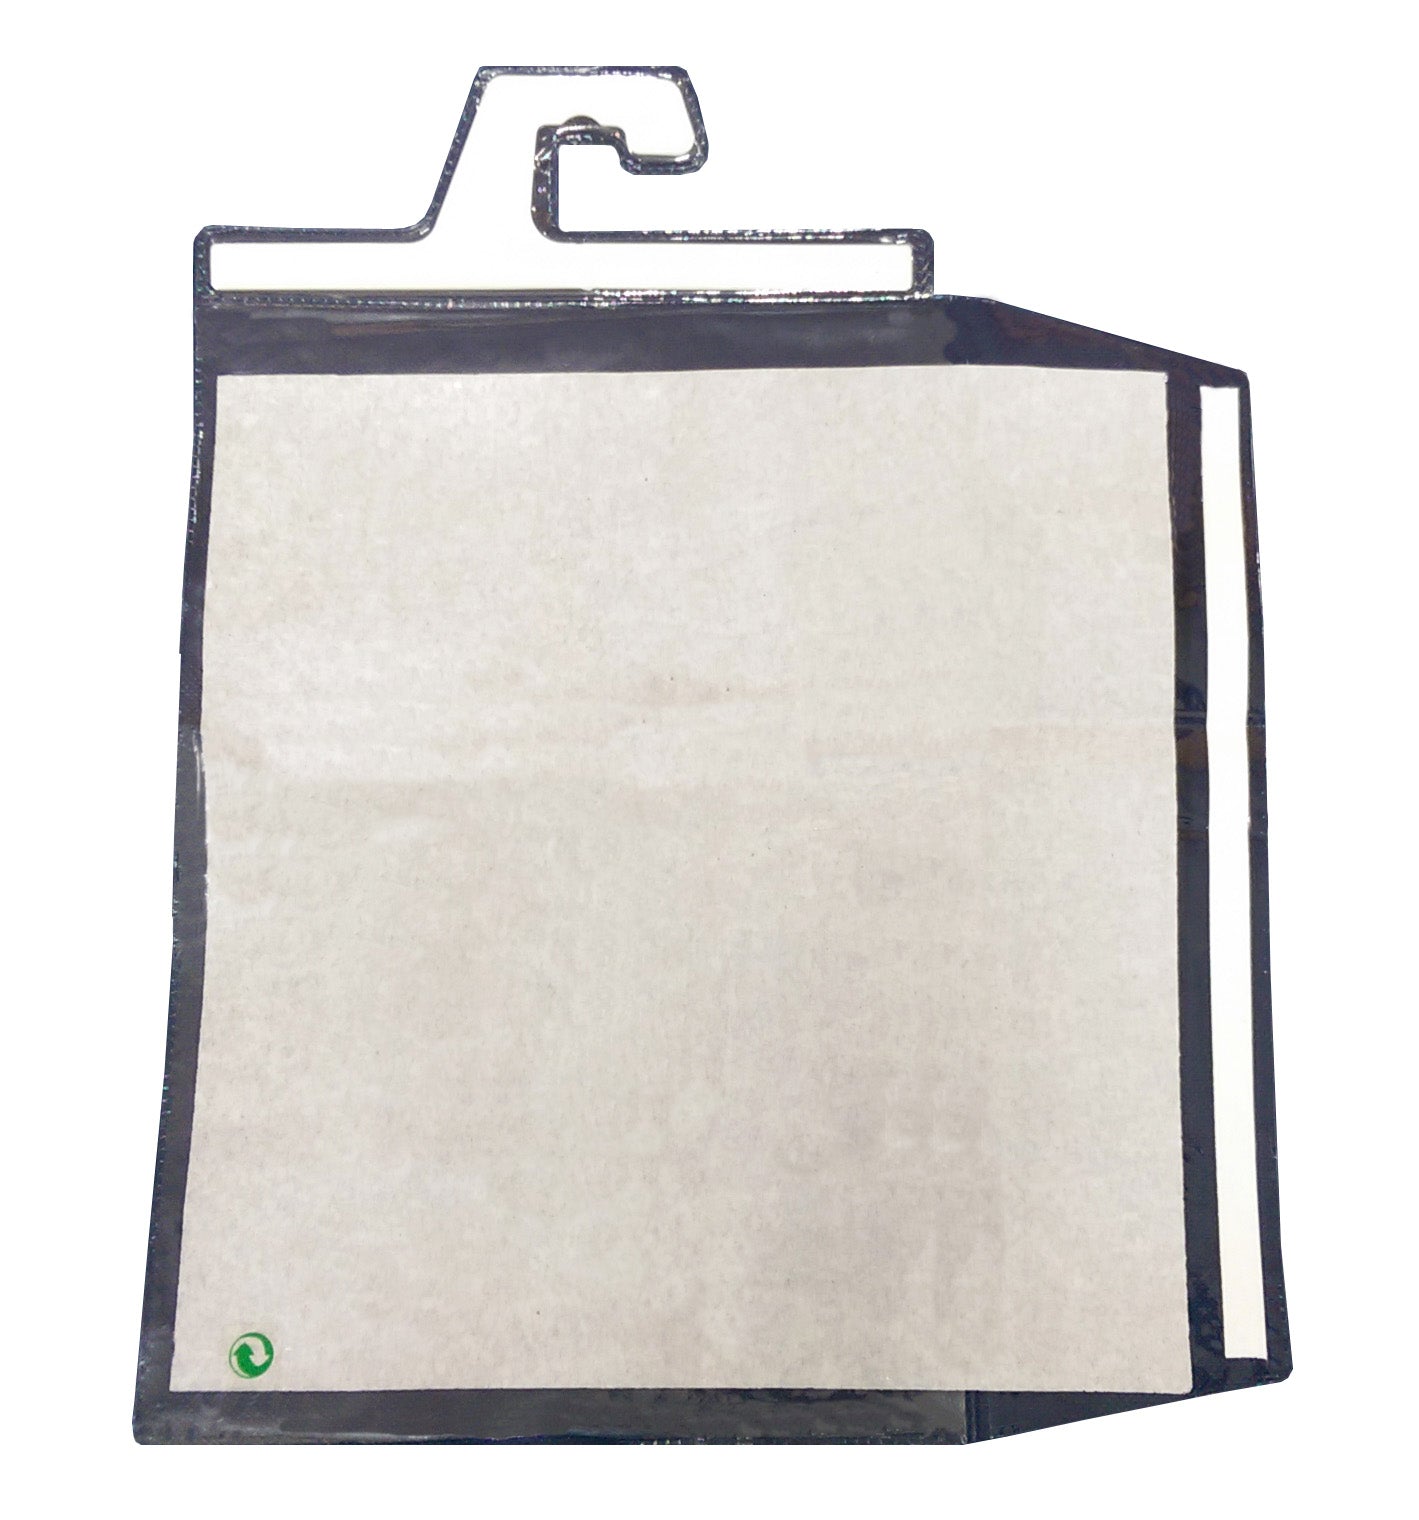 JLHS-hanger Heat-Sealed Bag